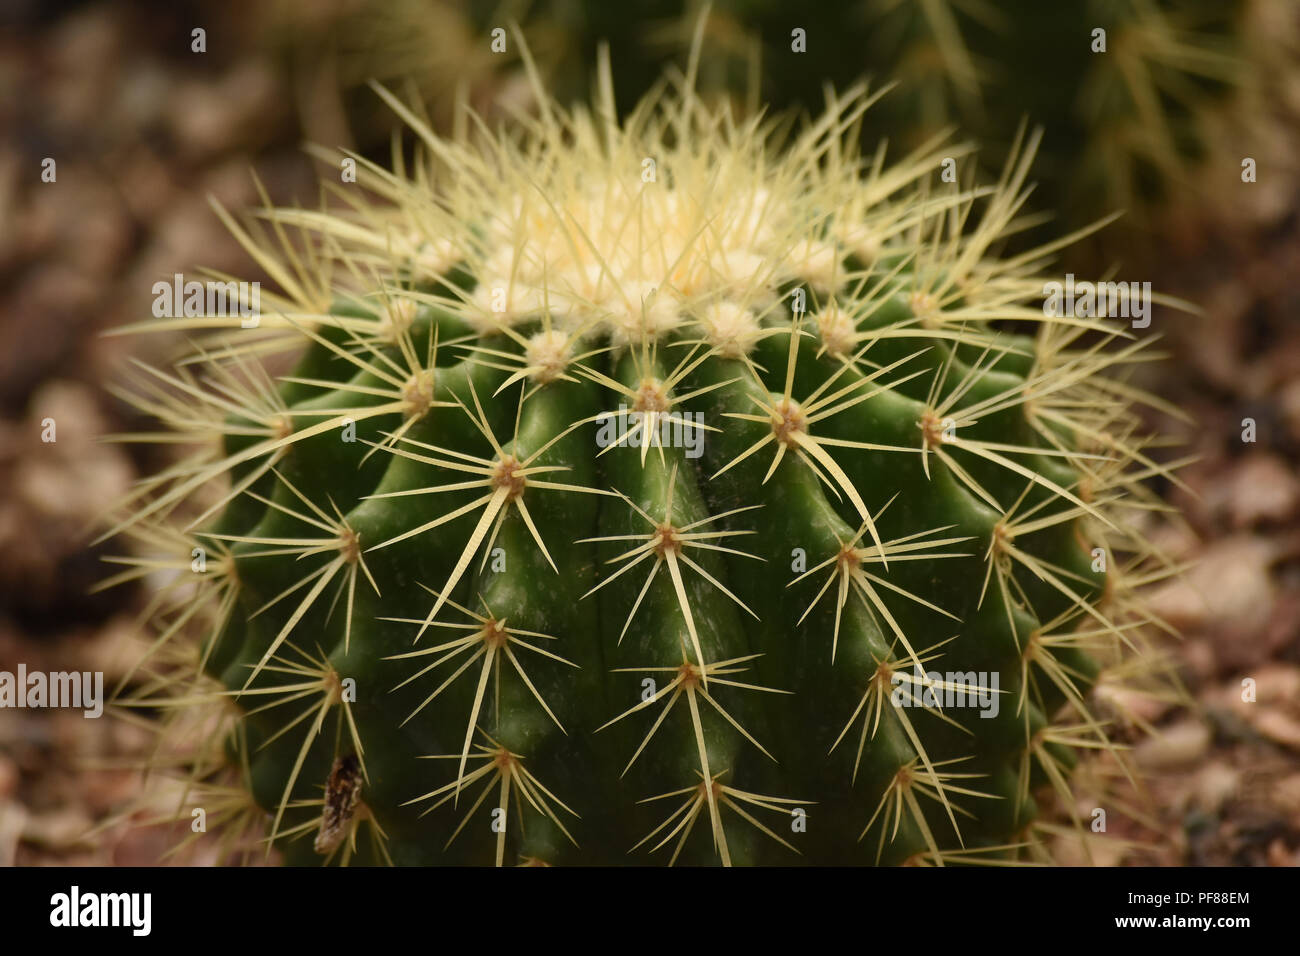 Close up of golden barrel cactus. Stock Photo